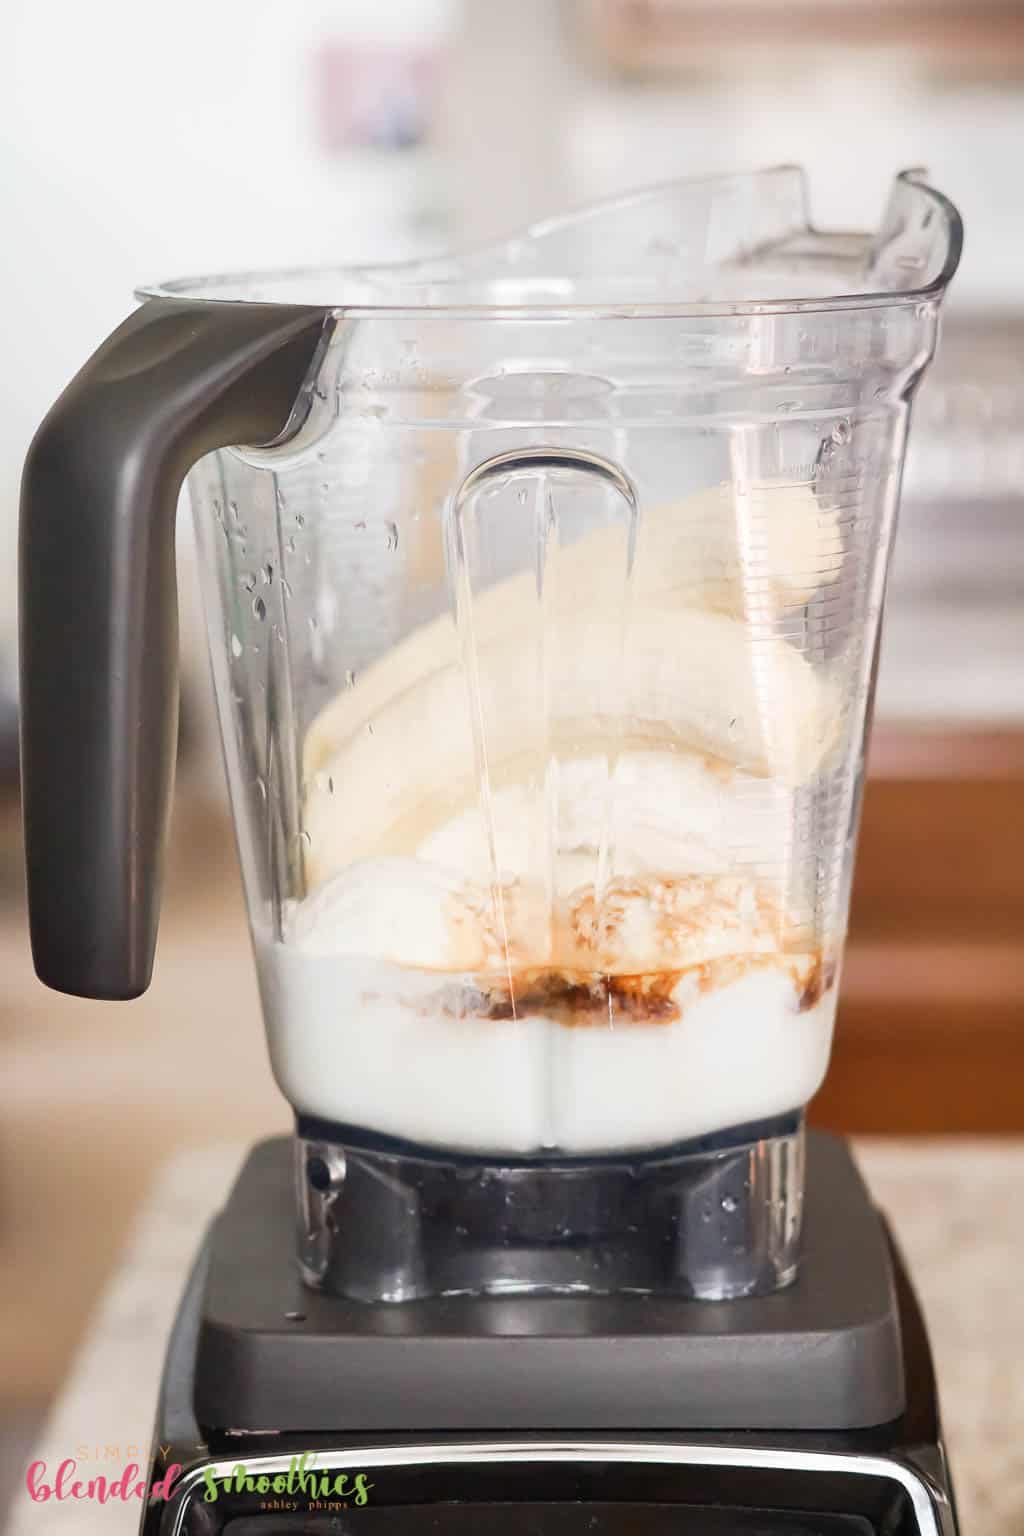 How To Make A Banana Milkshake